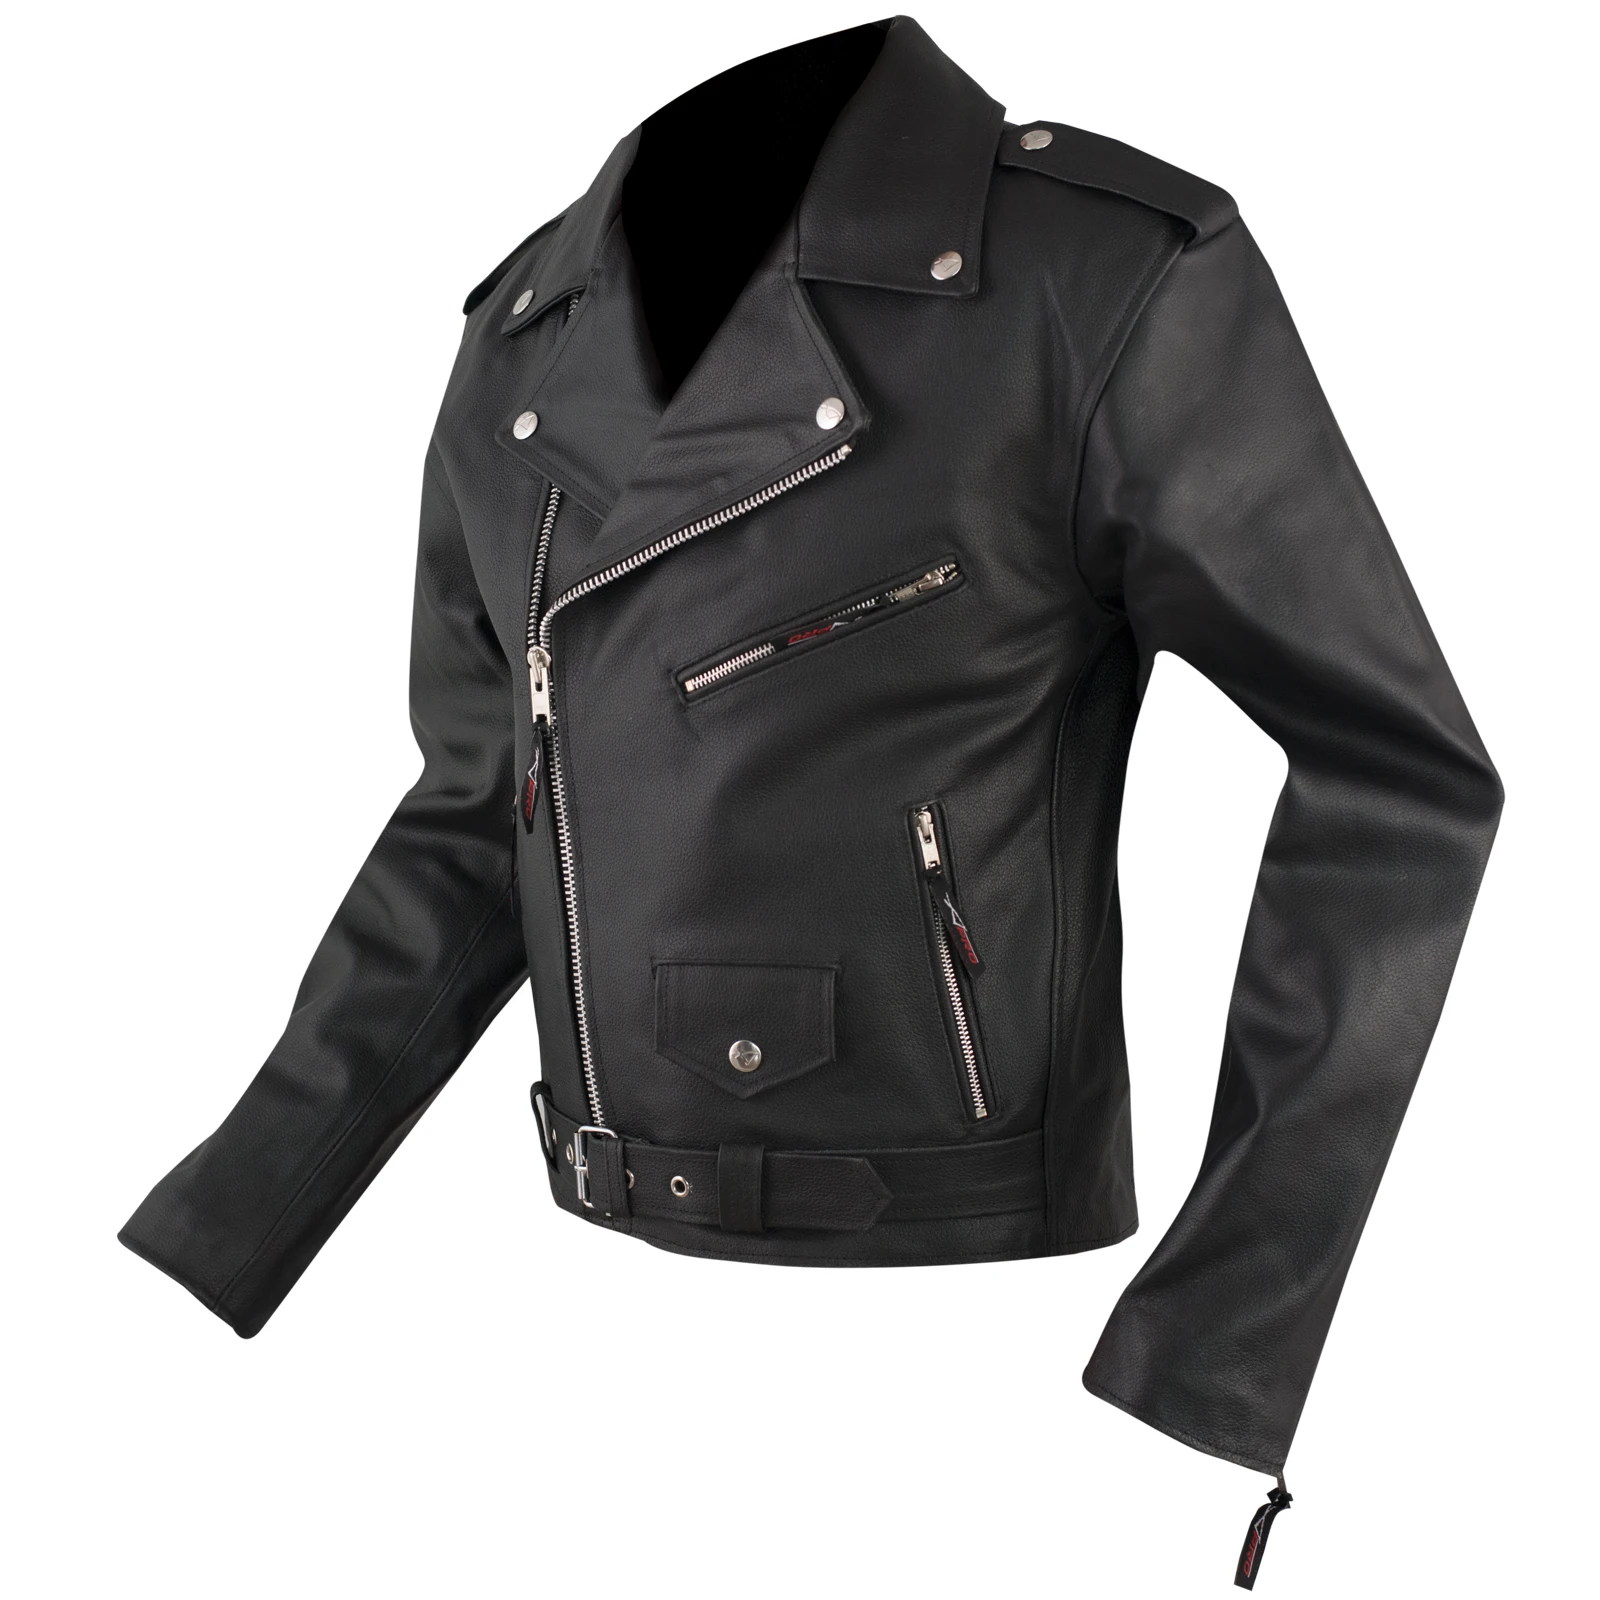 Байкерская кожаная мотоциклетная куртка Cruiser из коровьей кожи Всесезонная A-PRO